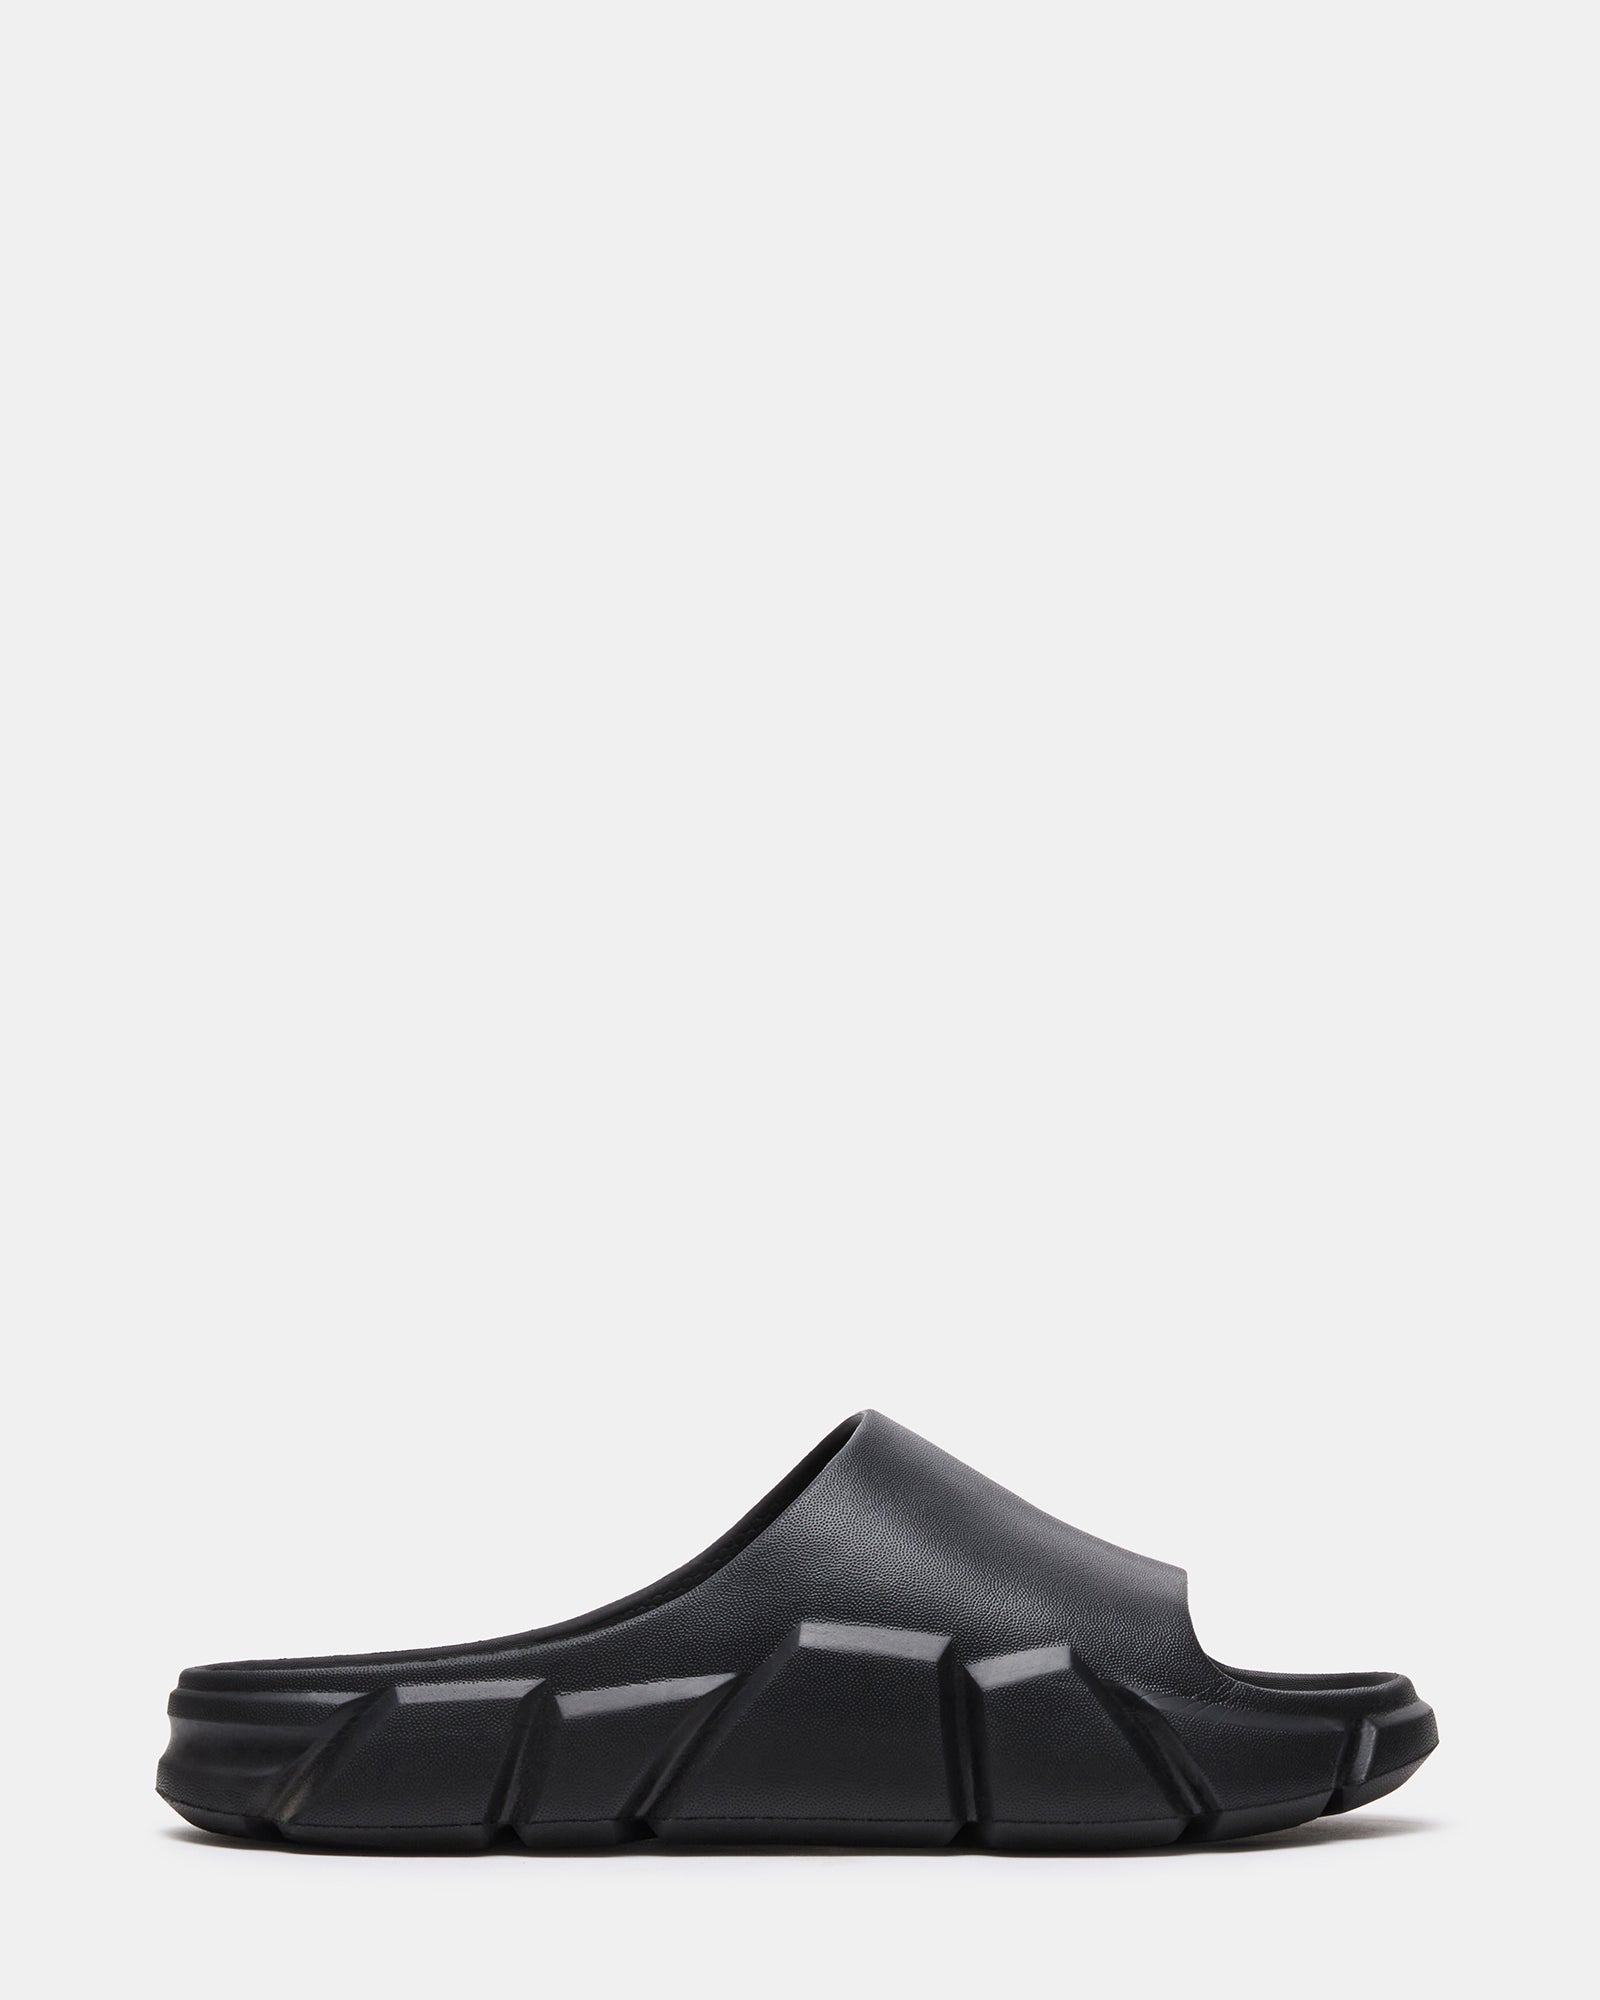 CHARGED Black Flatform Slide Sandal | Men's Sandals – Steve Madden